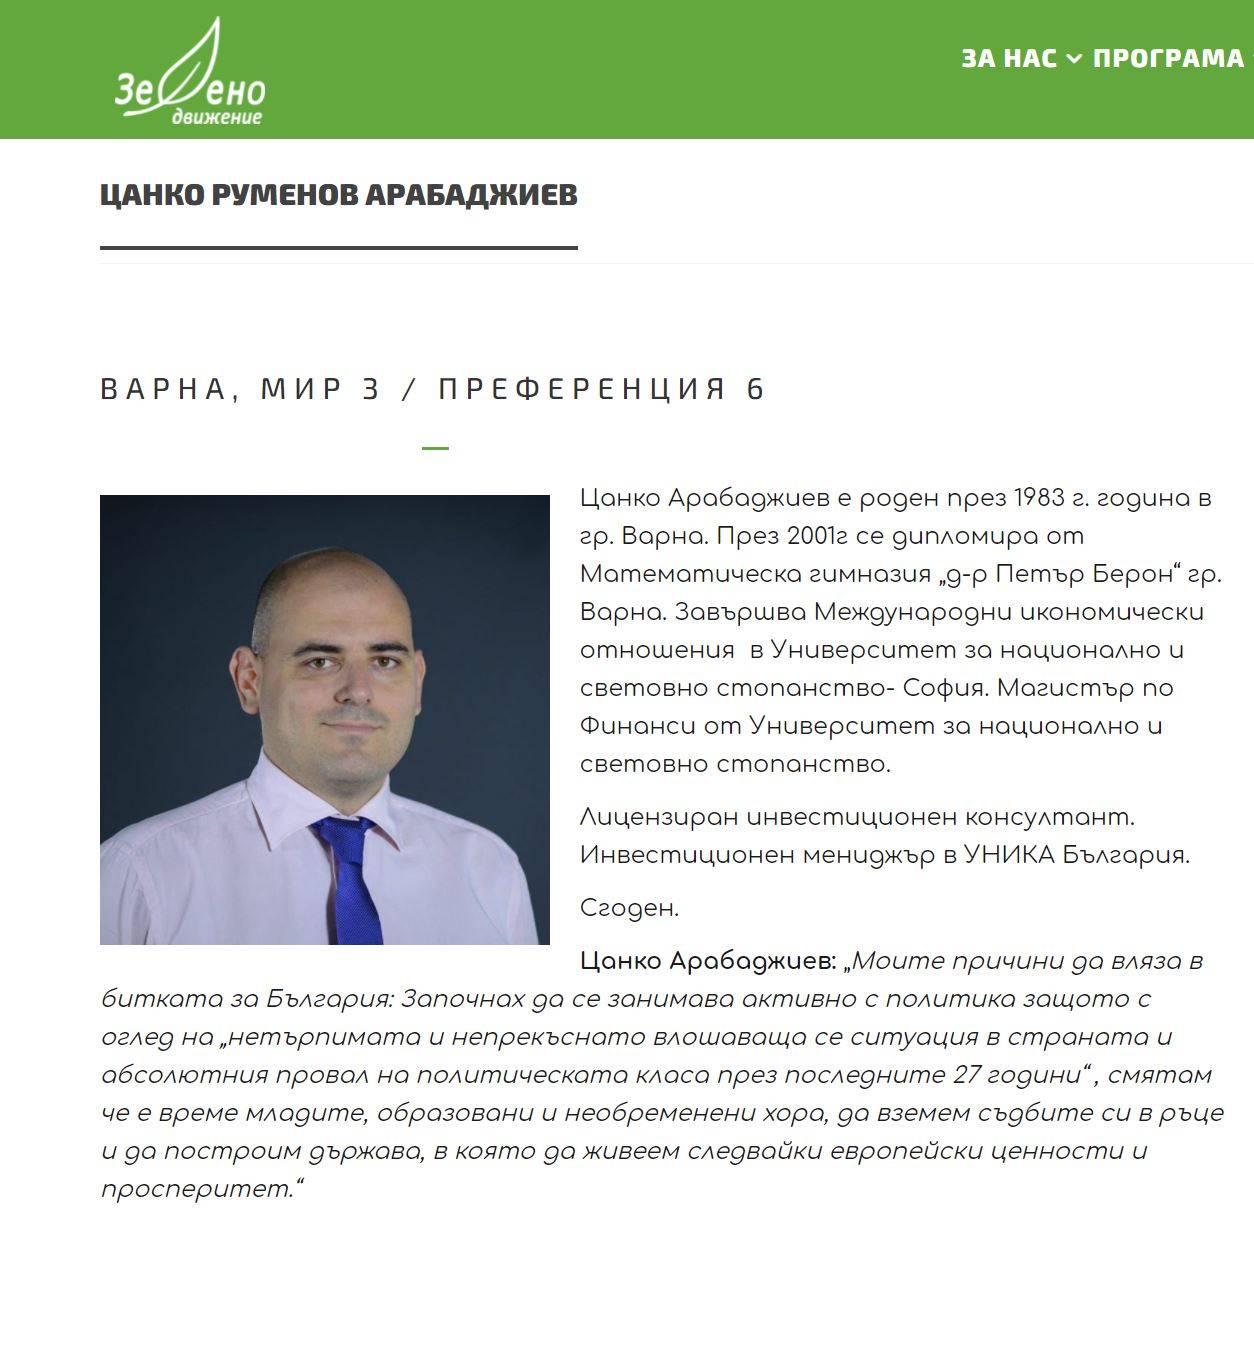 Цанко Арабаджиев като член на Зелено движение